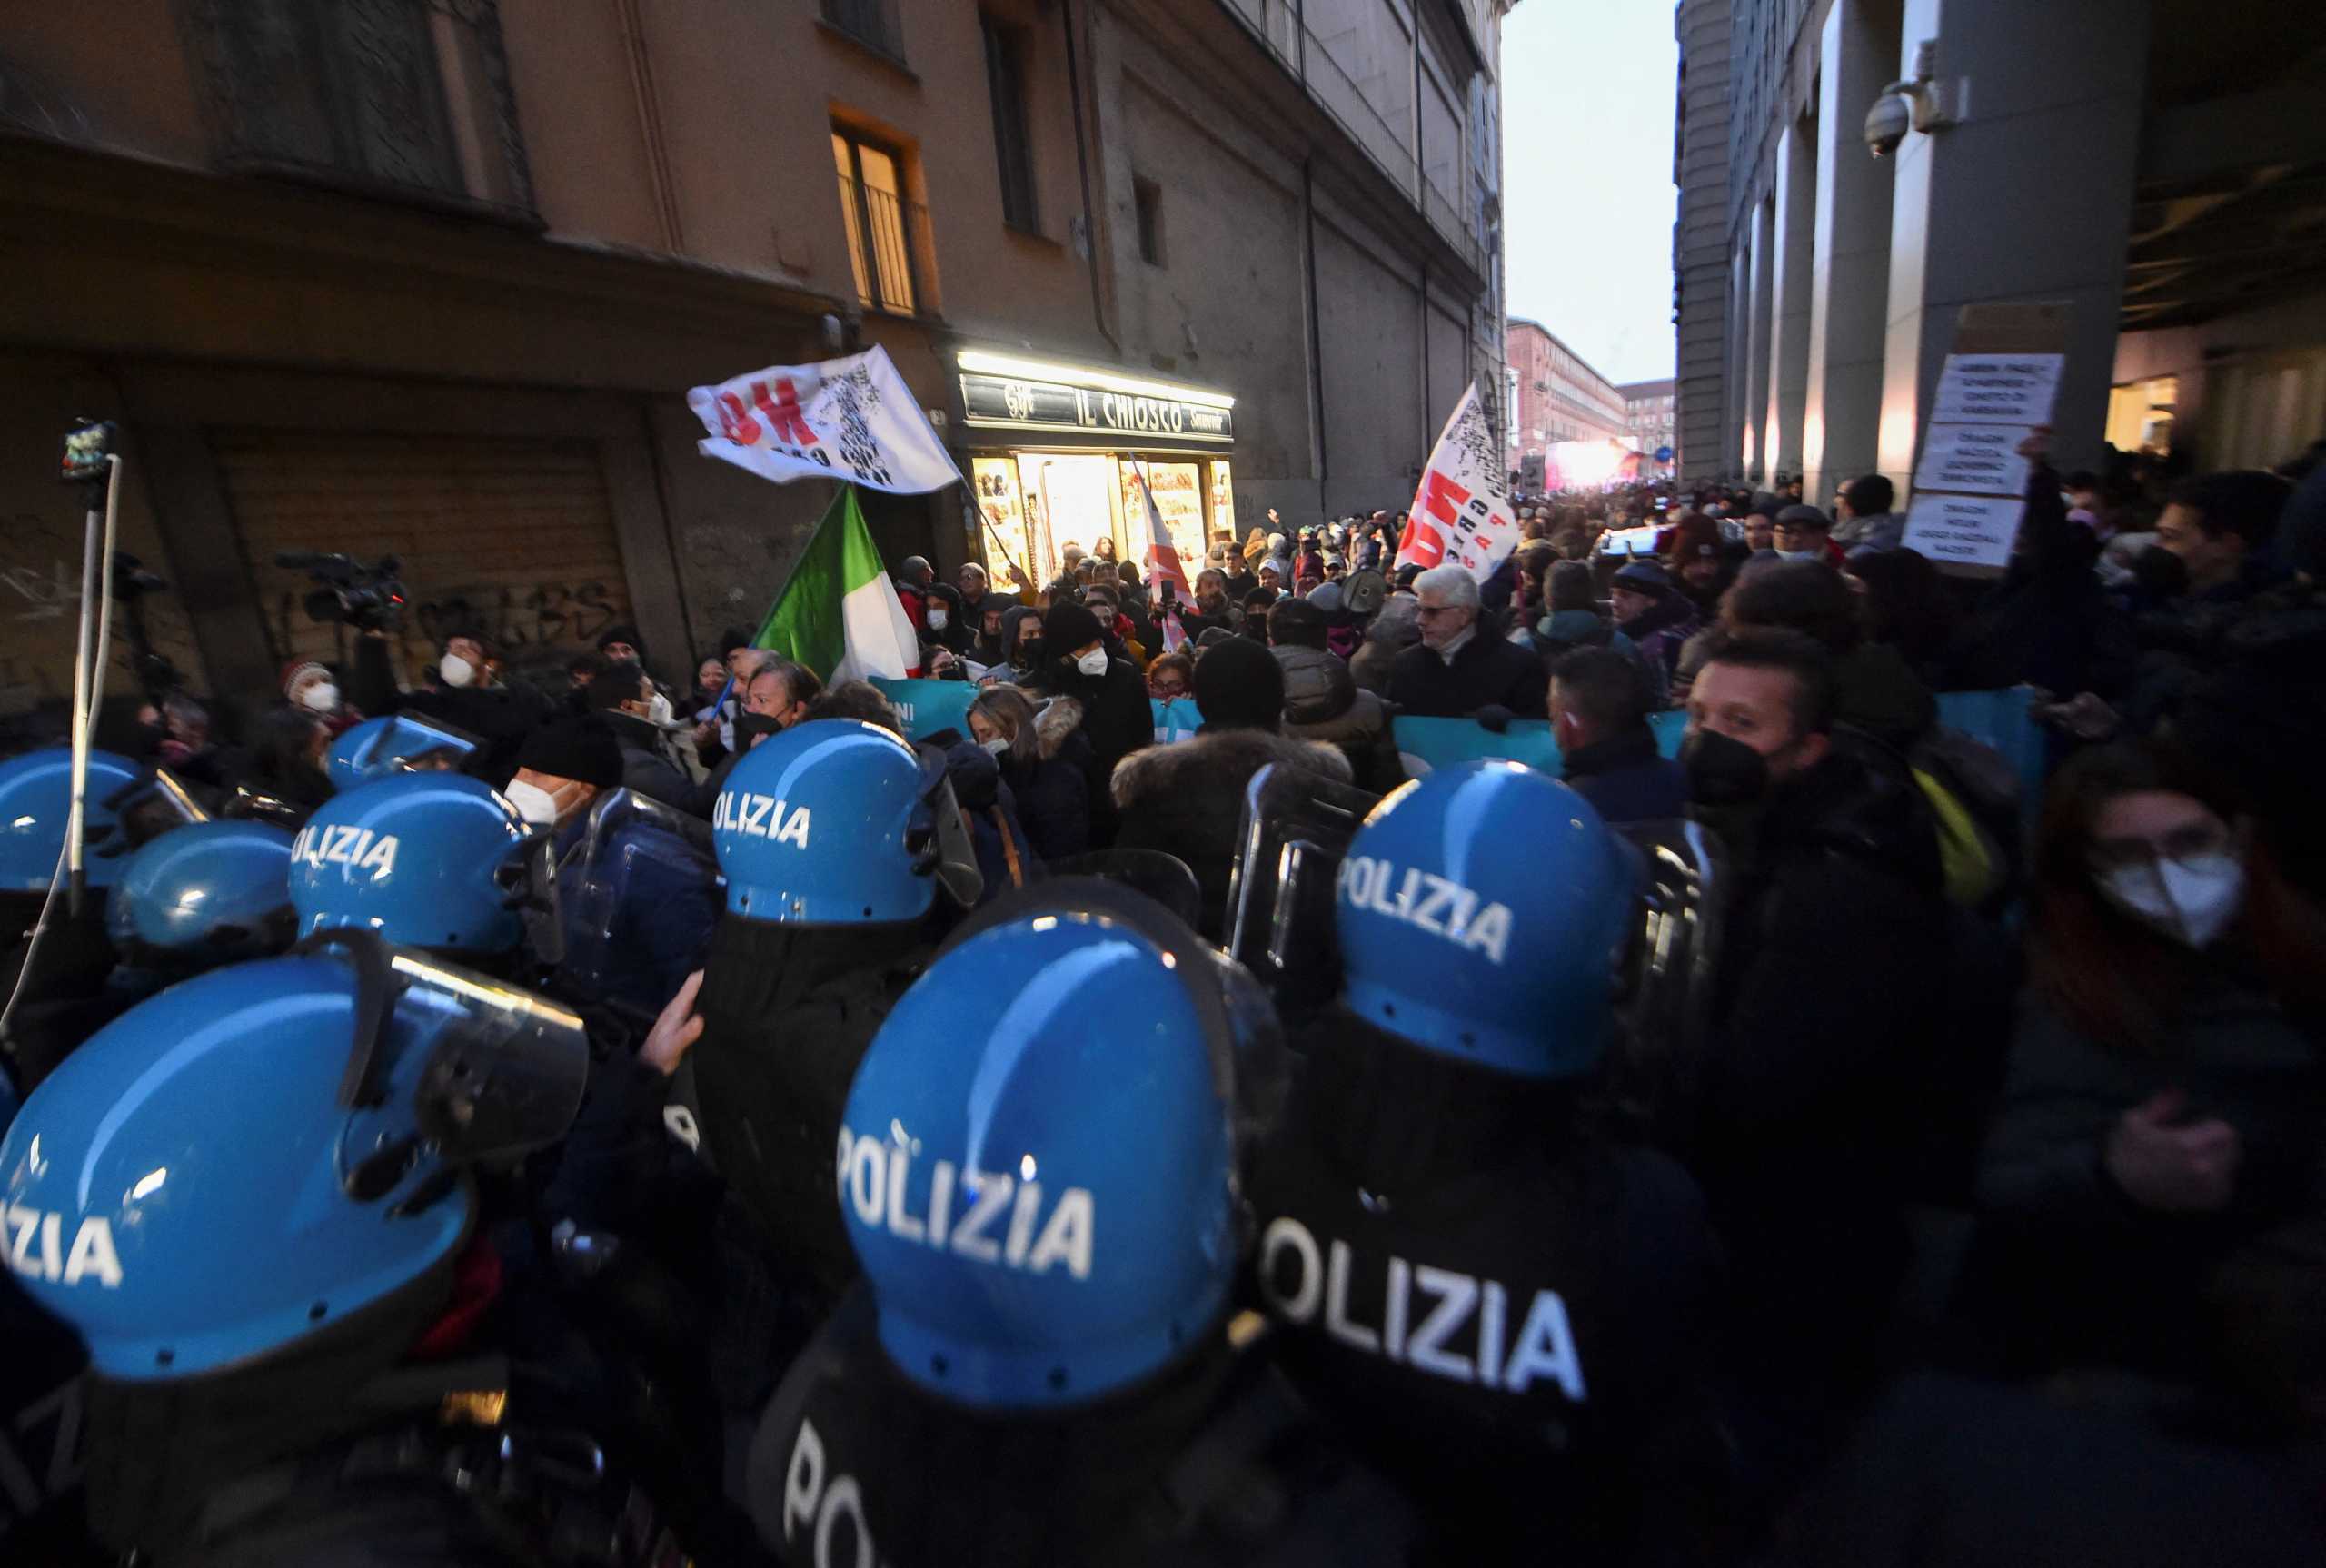 Ιταλία: Οι αστυνομικοί διαμαρτύρονται επειδή παρέλαβαν ροζ μάσκες κατά του κορονοϊού